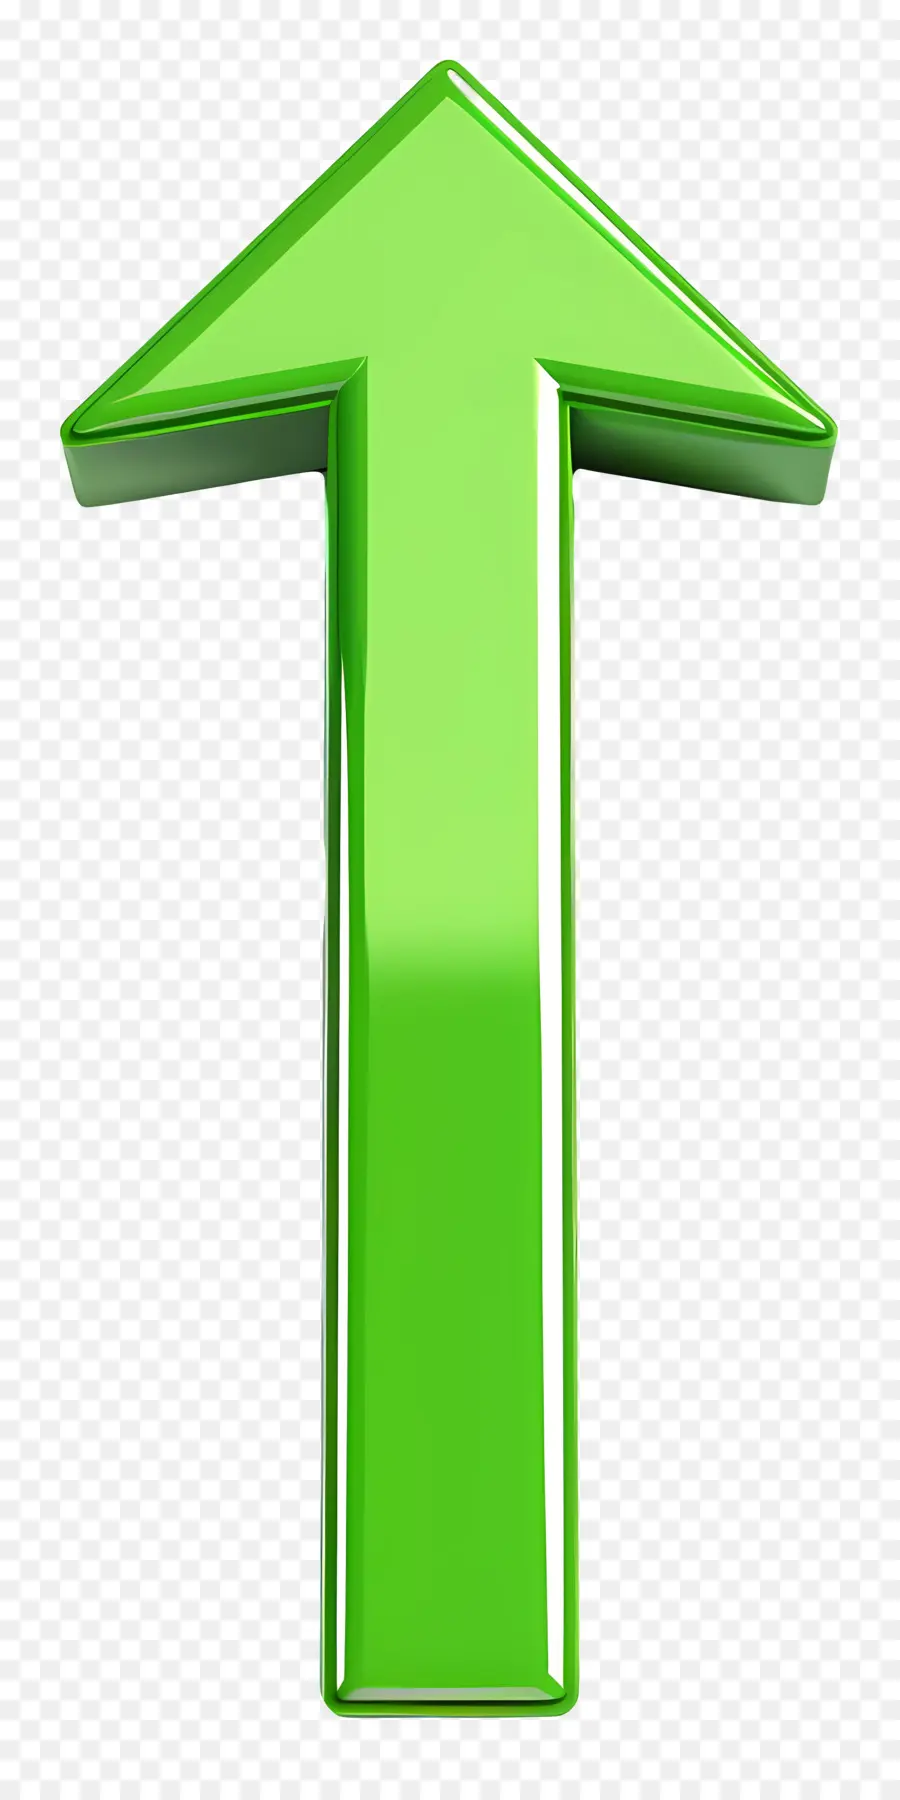 Freccia metallica - Freccia metallica verde rivolta verso l'alto, appoggiata a destra